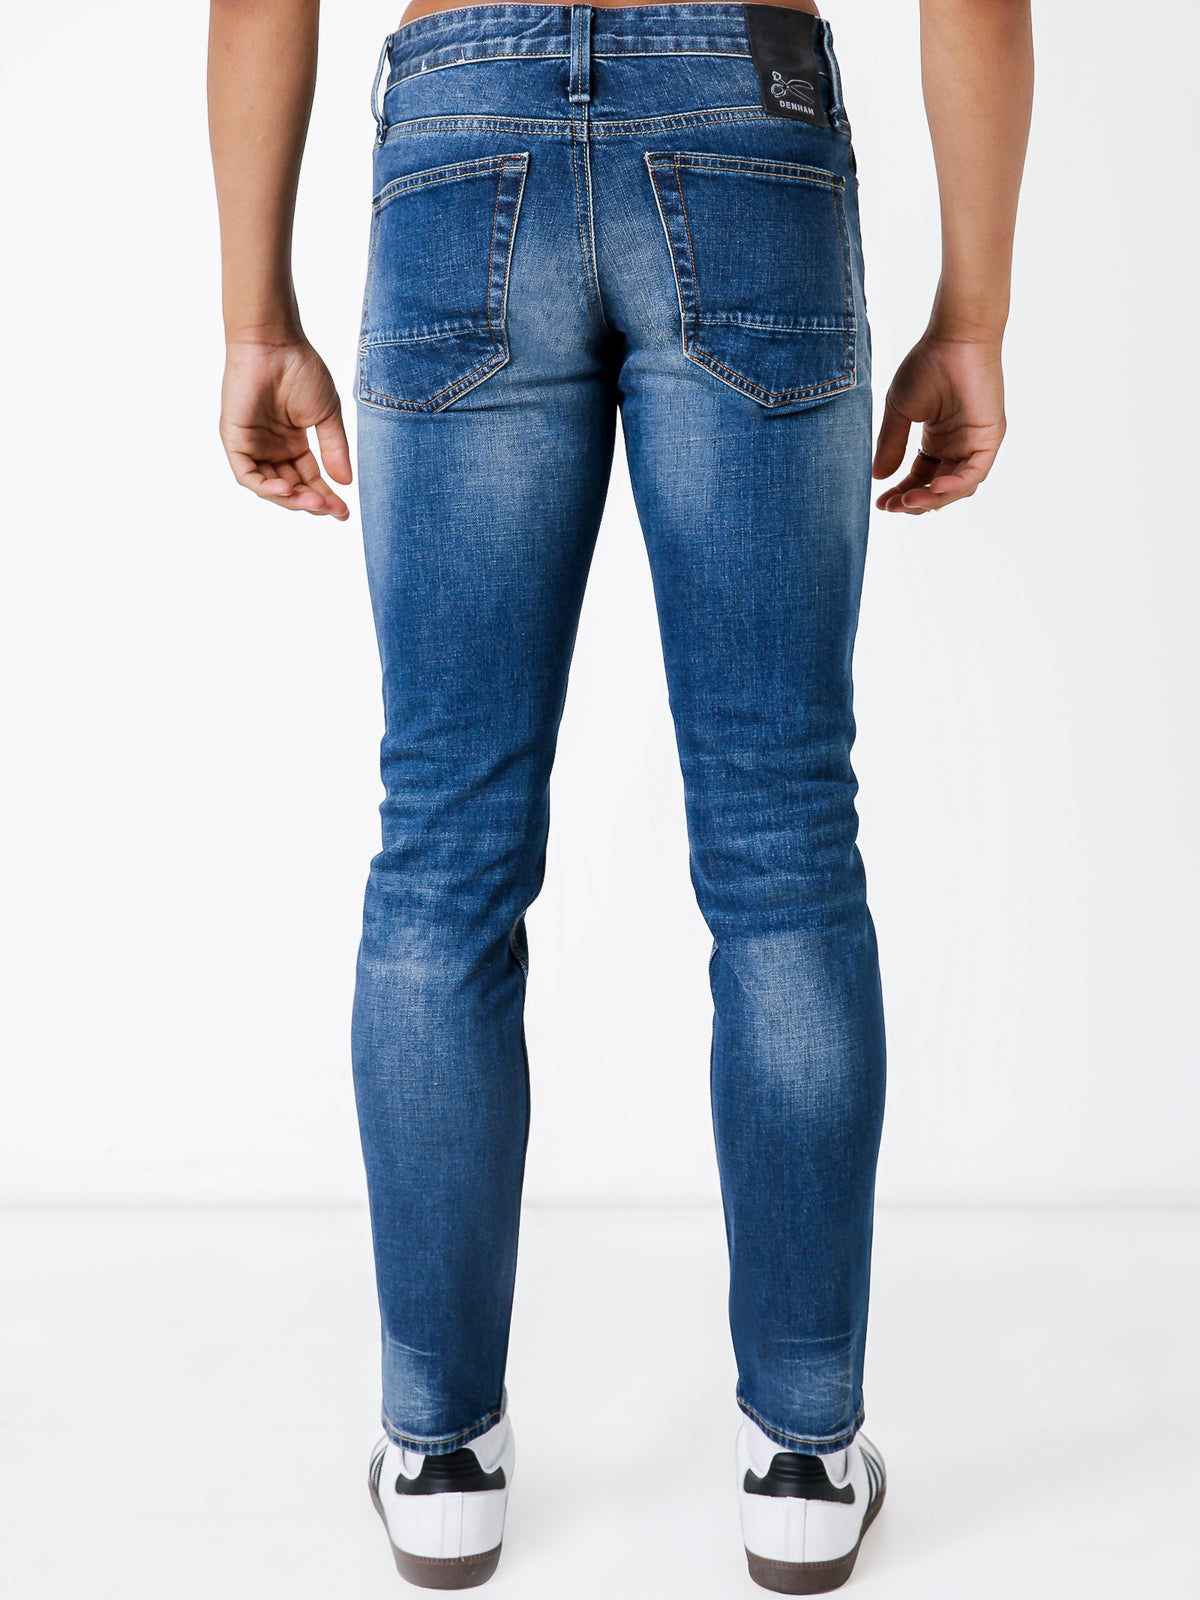 Razor ACDBL Slim Jeans in Active Dark Blue Denim